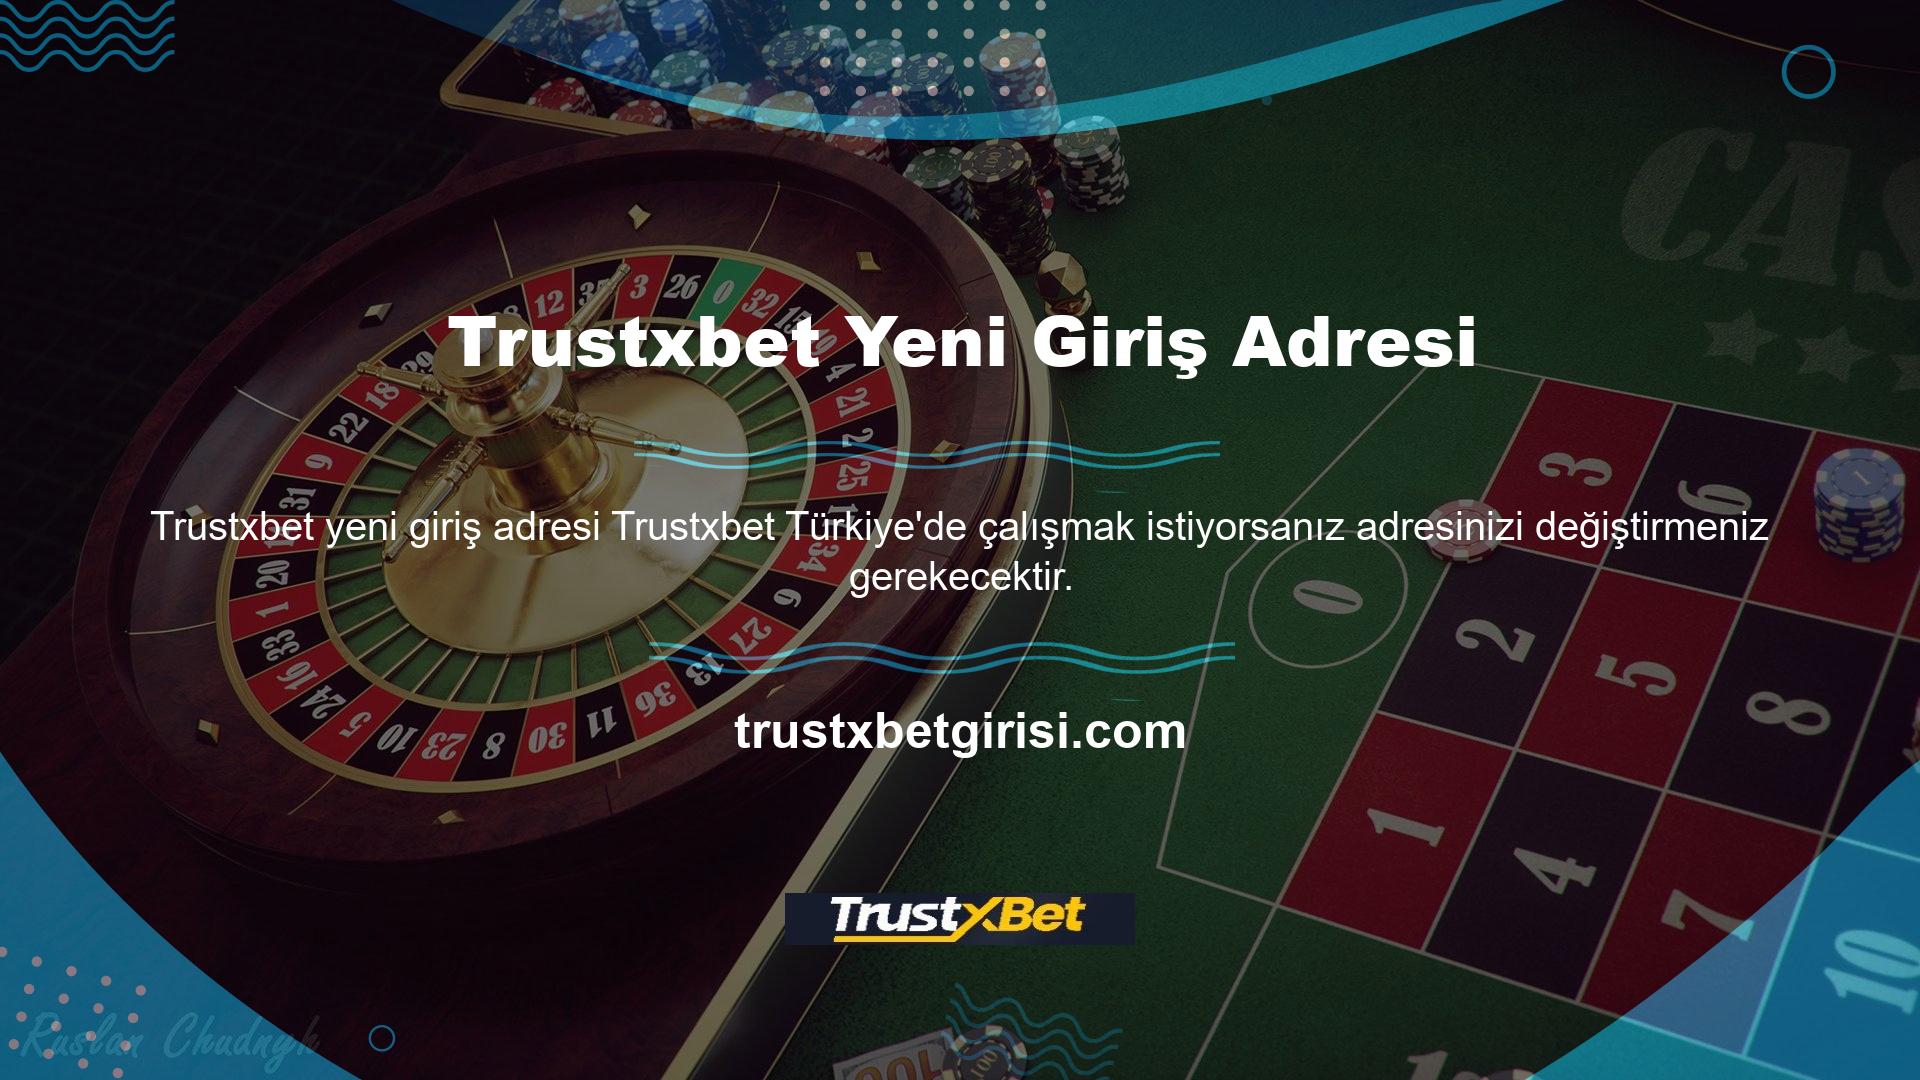 Trustxbet web sitenizin Türk casino alanında ön plana çıkmasını istiyorsanız adresinizi değiştirmeniz gerekmektedir